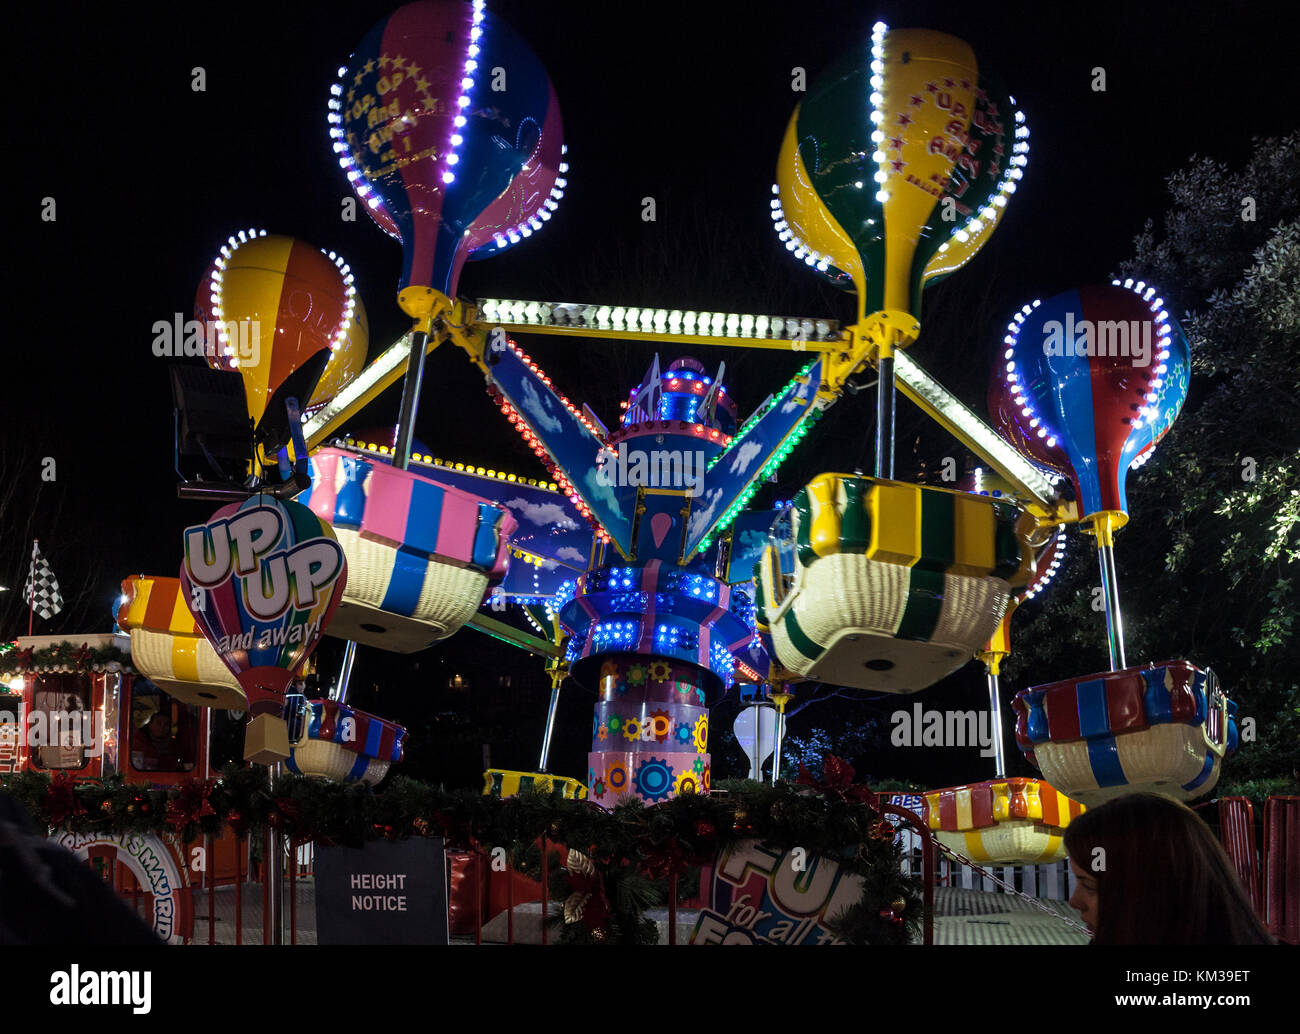 Bis nach oben und weg, ein Ballon-themed Messe Fahrt in die Princes Street Gardens als Teil von Edinburgh's Christmas Event 2017. Schottland, Großbritannien, Europa Stockfoto